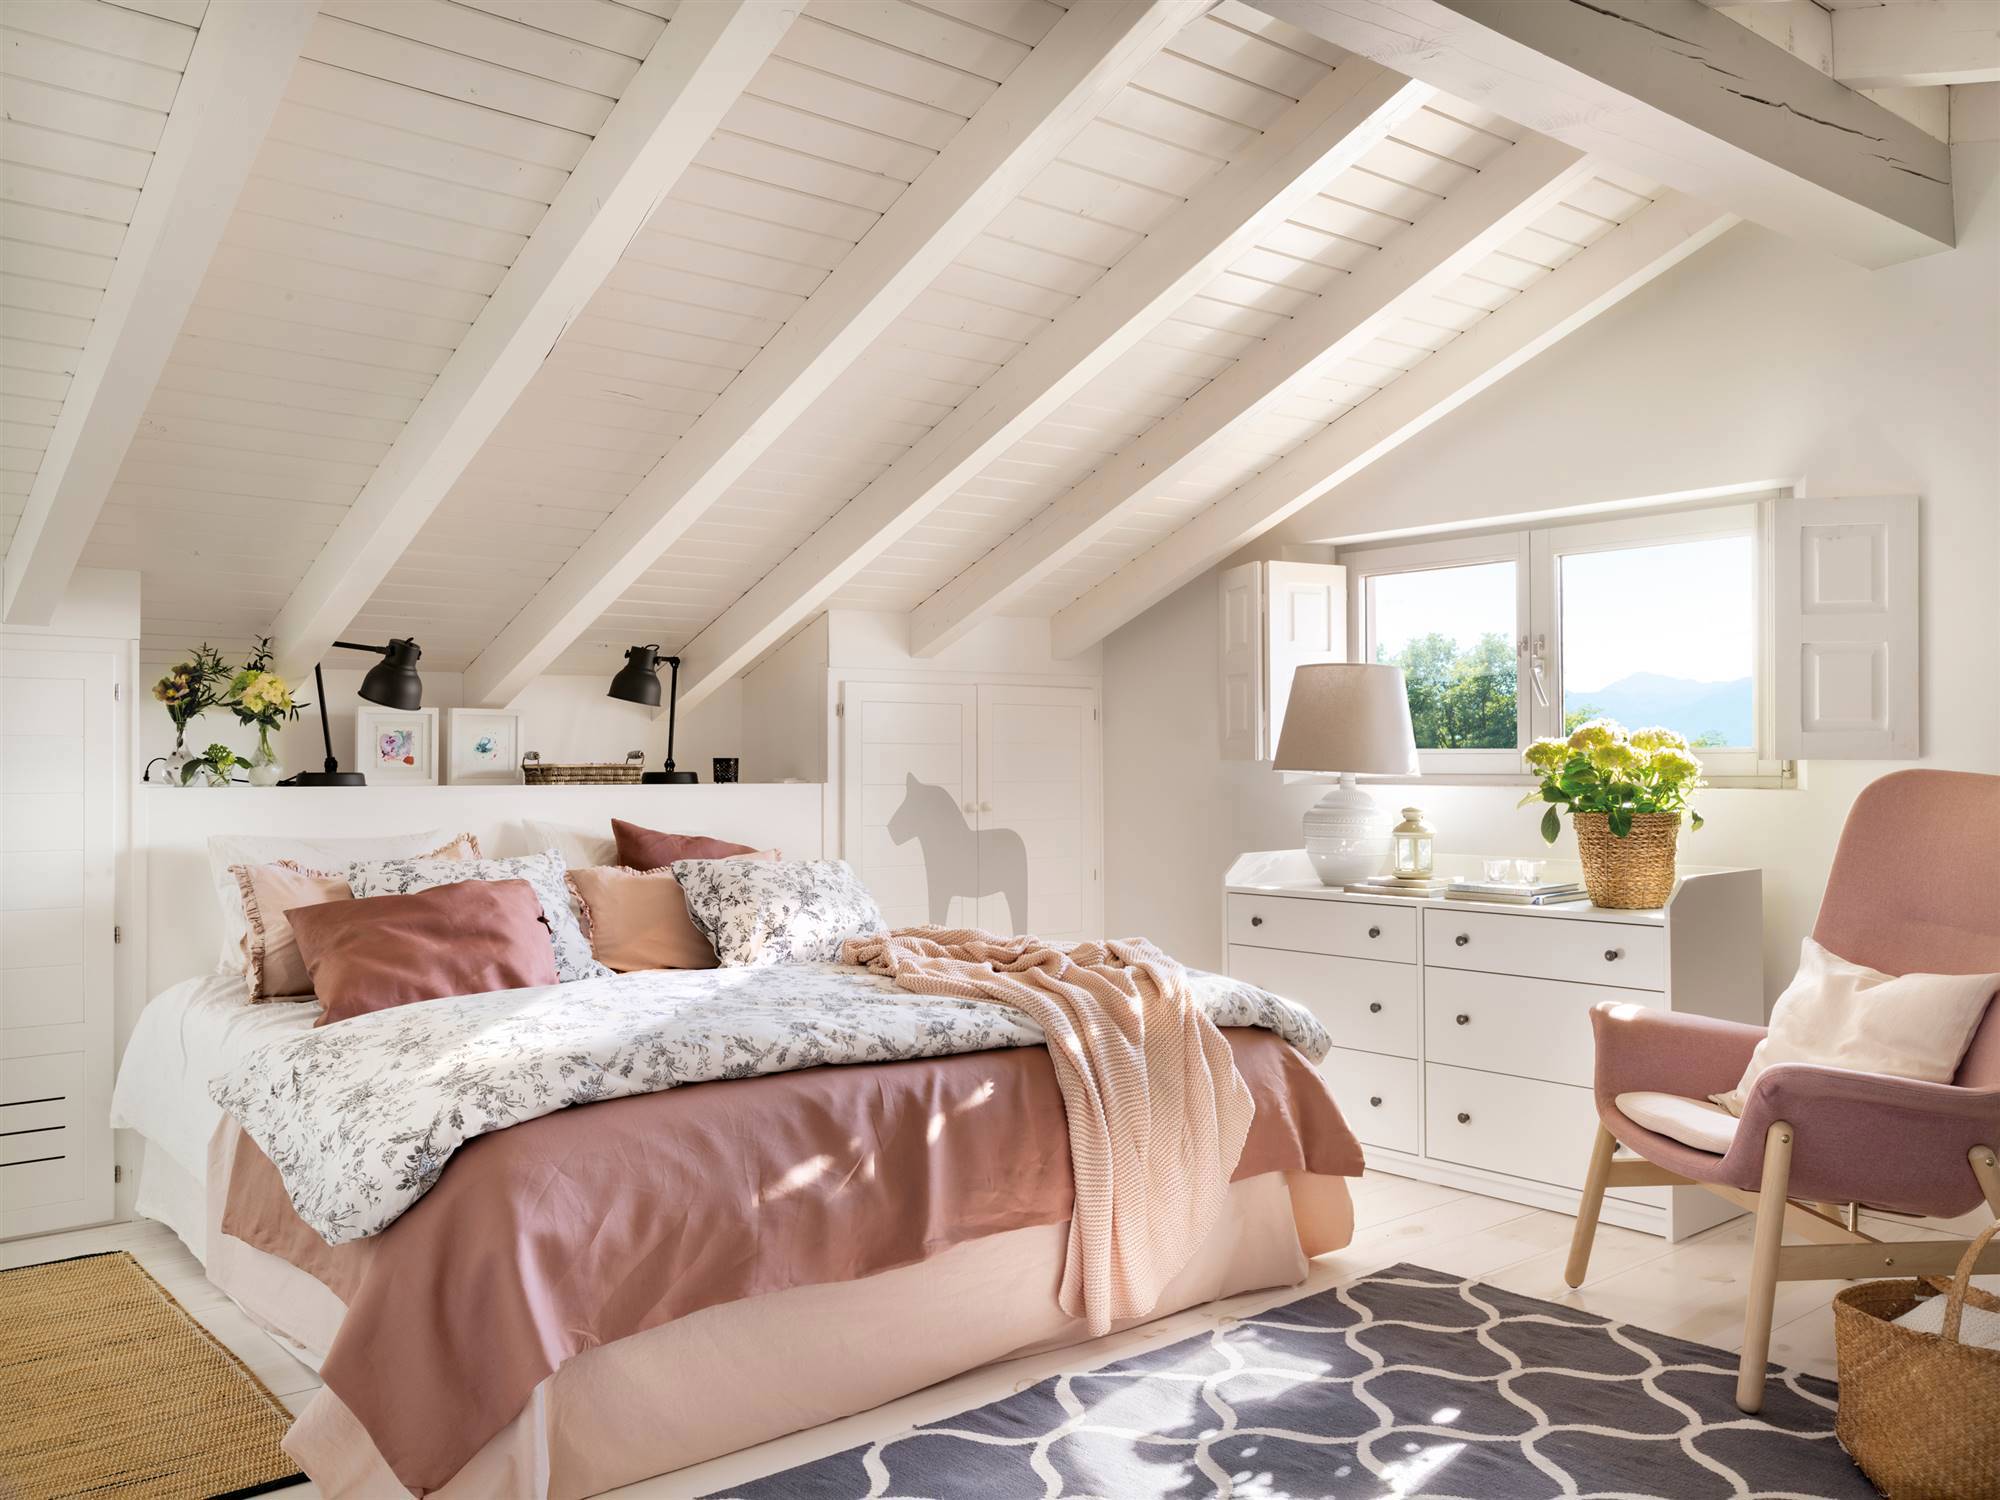 Dormitorio abuhardillado pintado en blanco con butaca rosa.